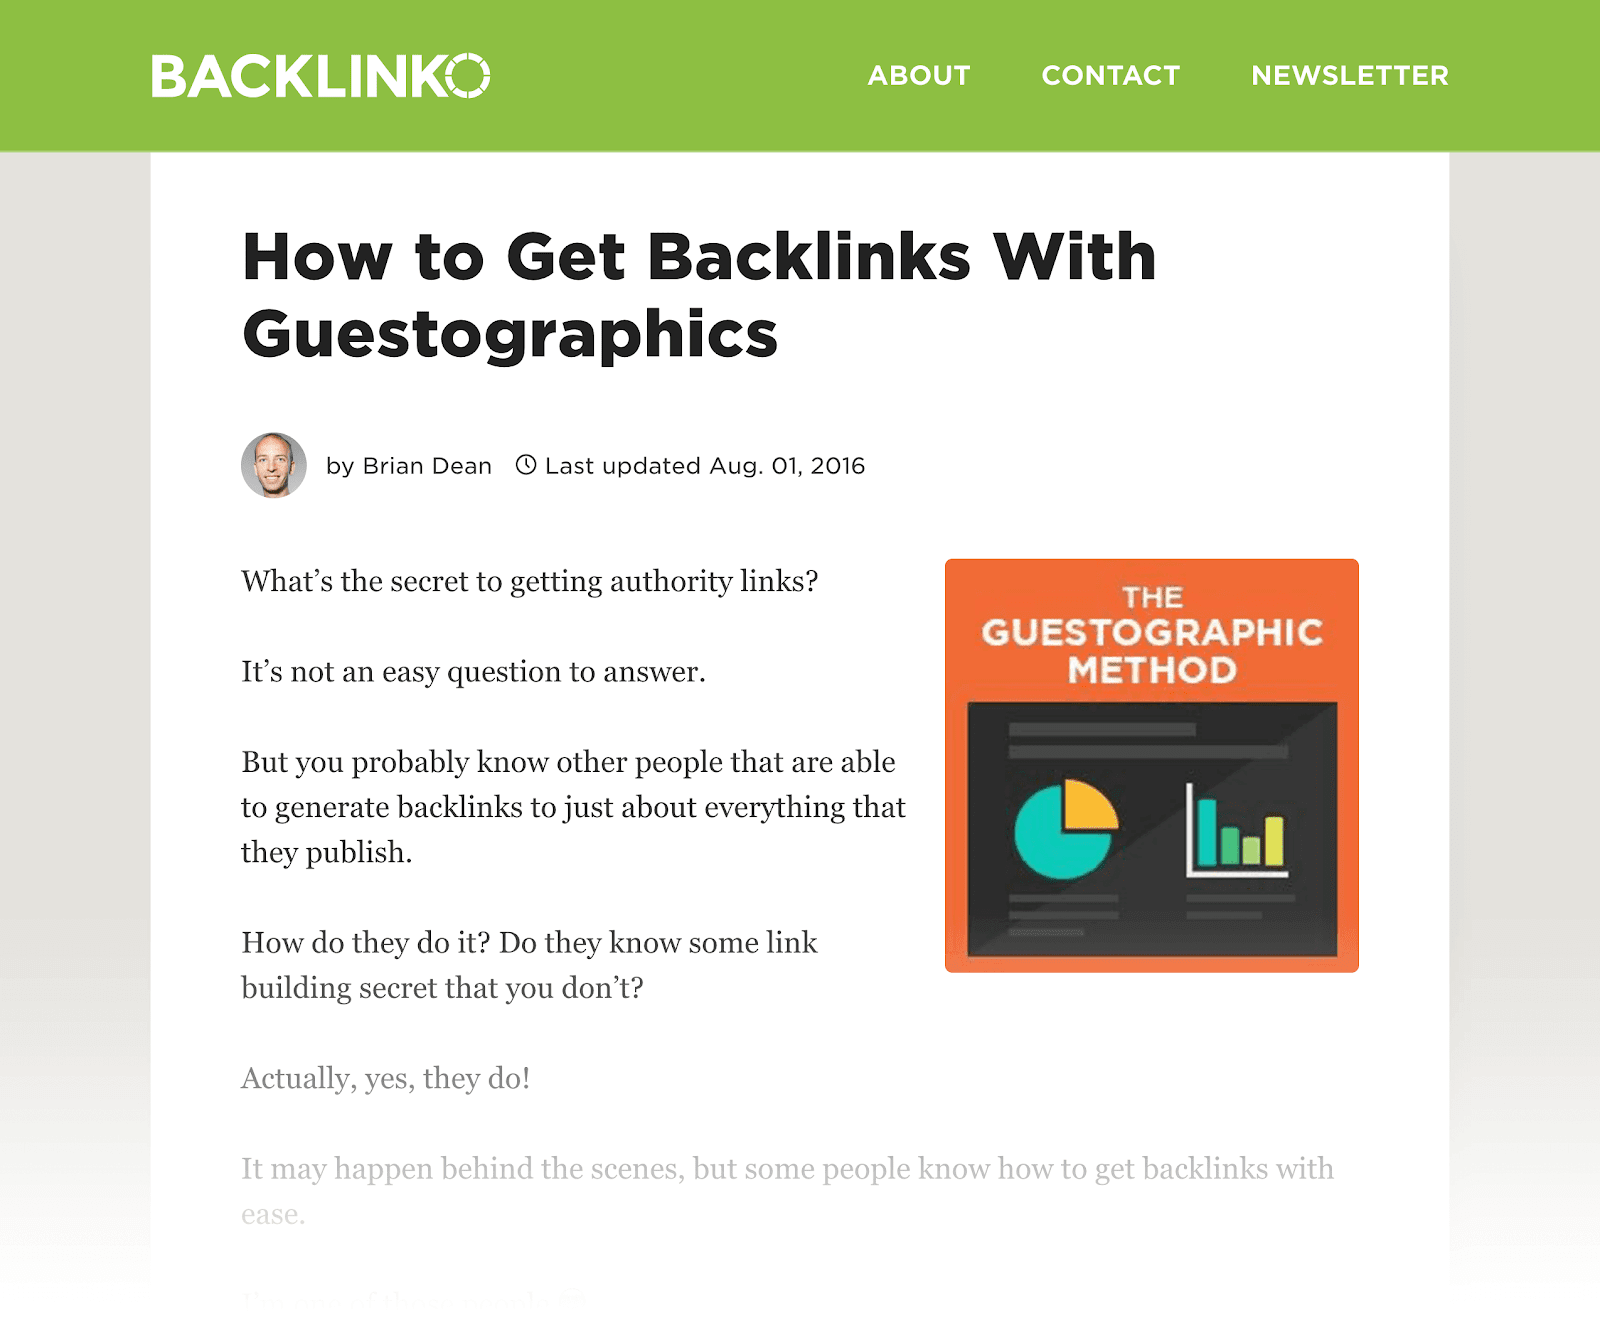 Làm thế nào để có được Backlinks với Guestographics